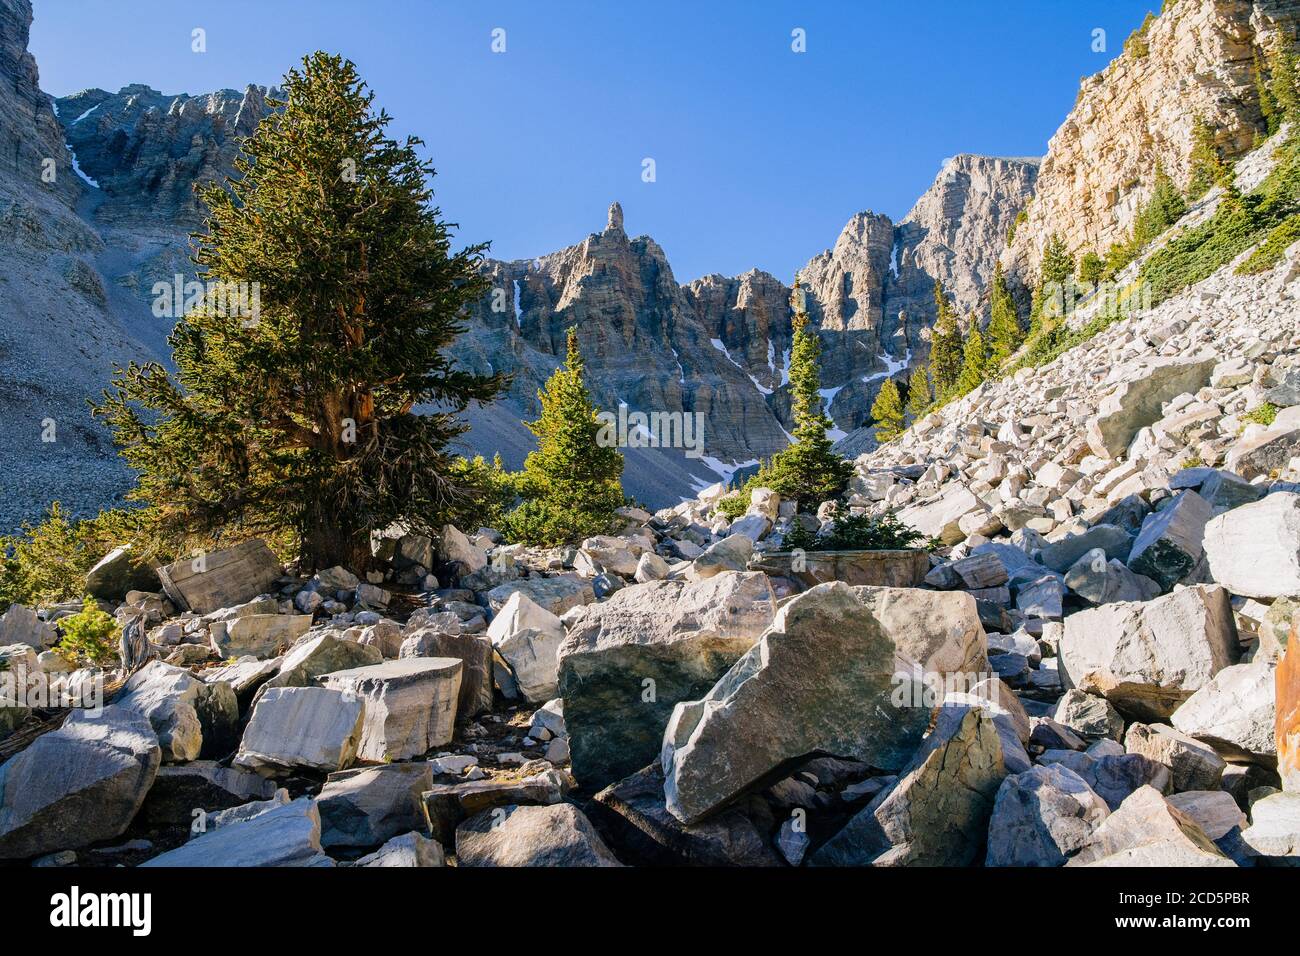 Paesaggio con alberi di pino setlecone e detriti di roccia in valle, Great Basin National Park, White Pine County, Nevada, Stati Uniti Foto Stock